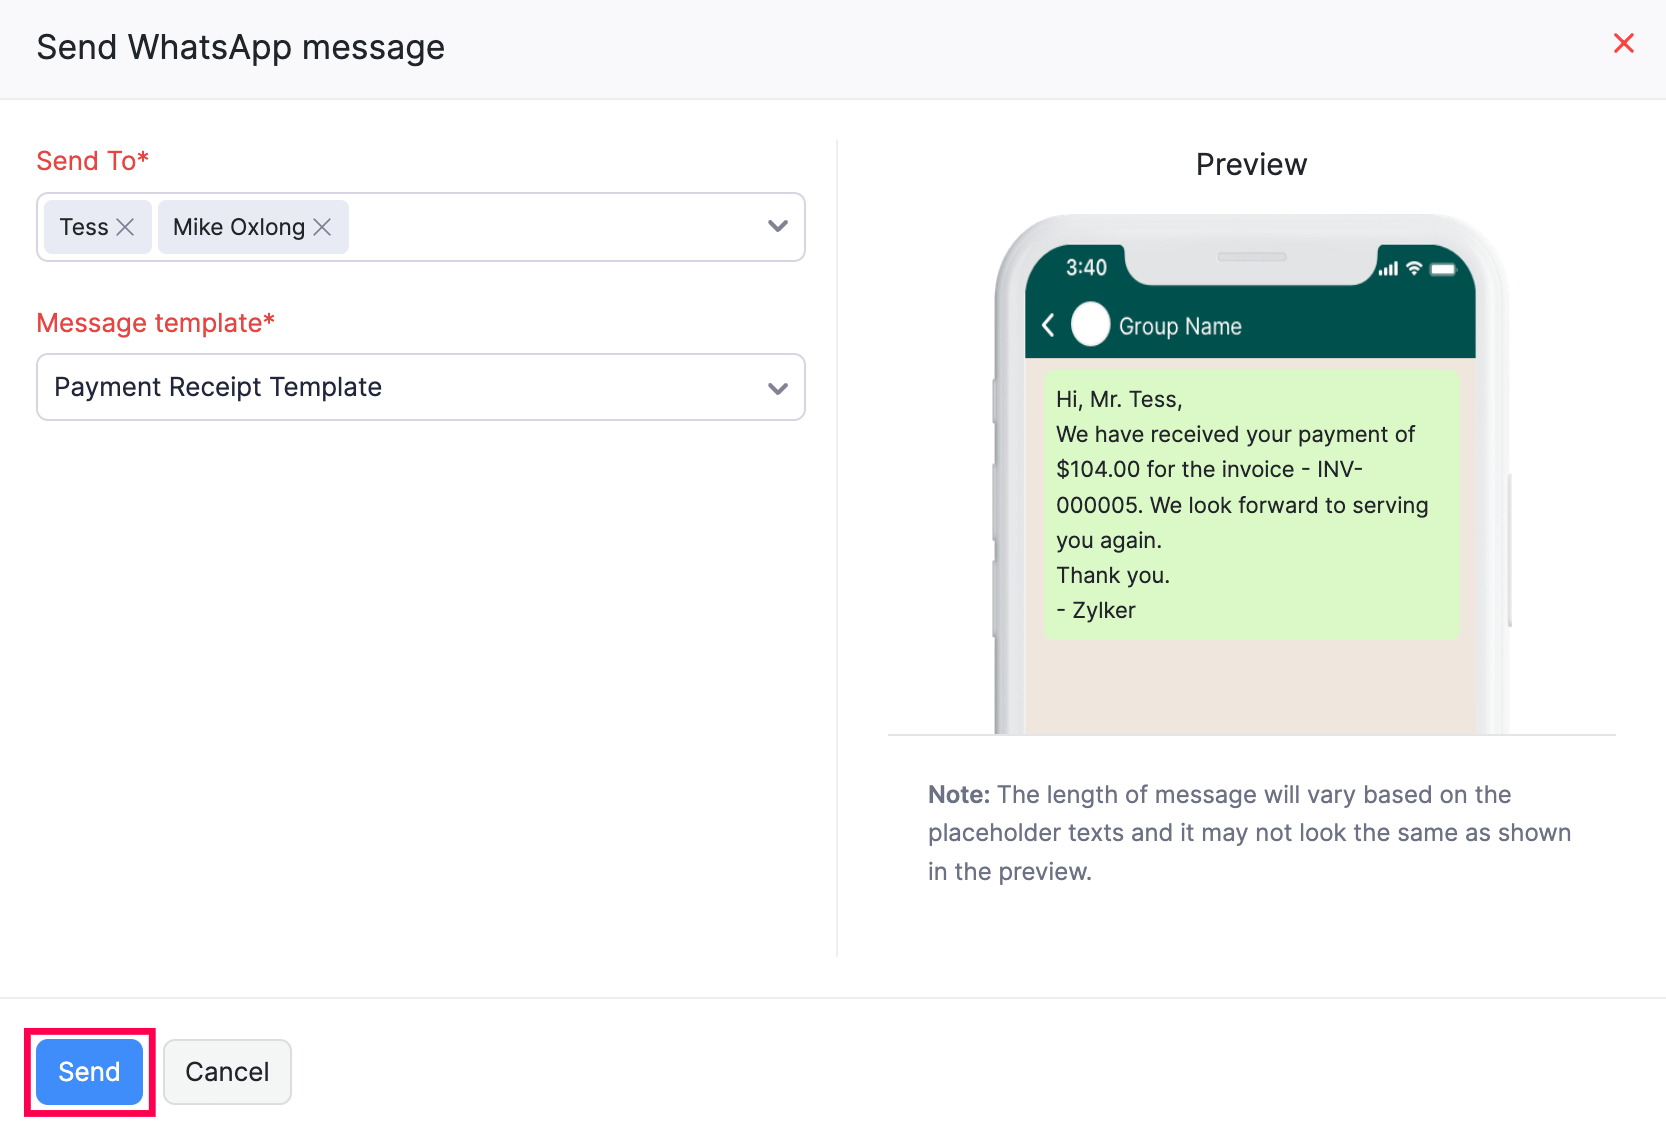 Send WhatsApp Message - Payment Receipt